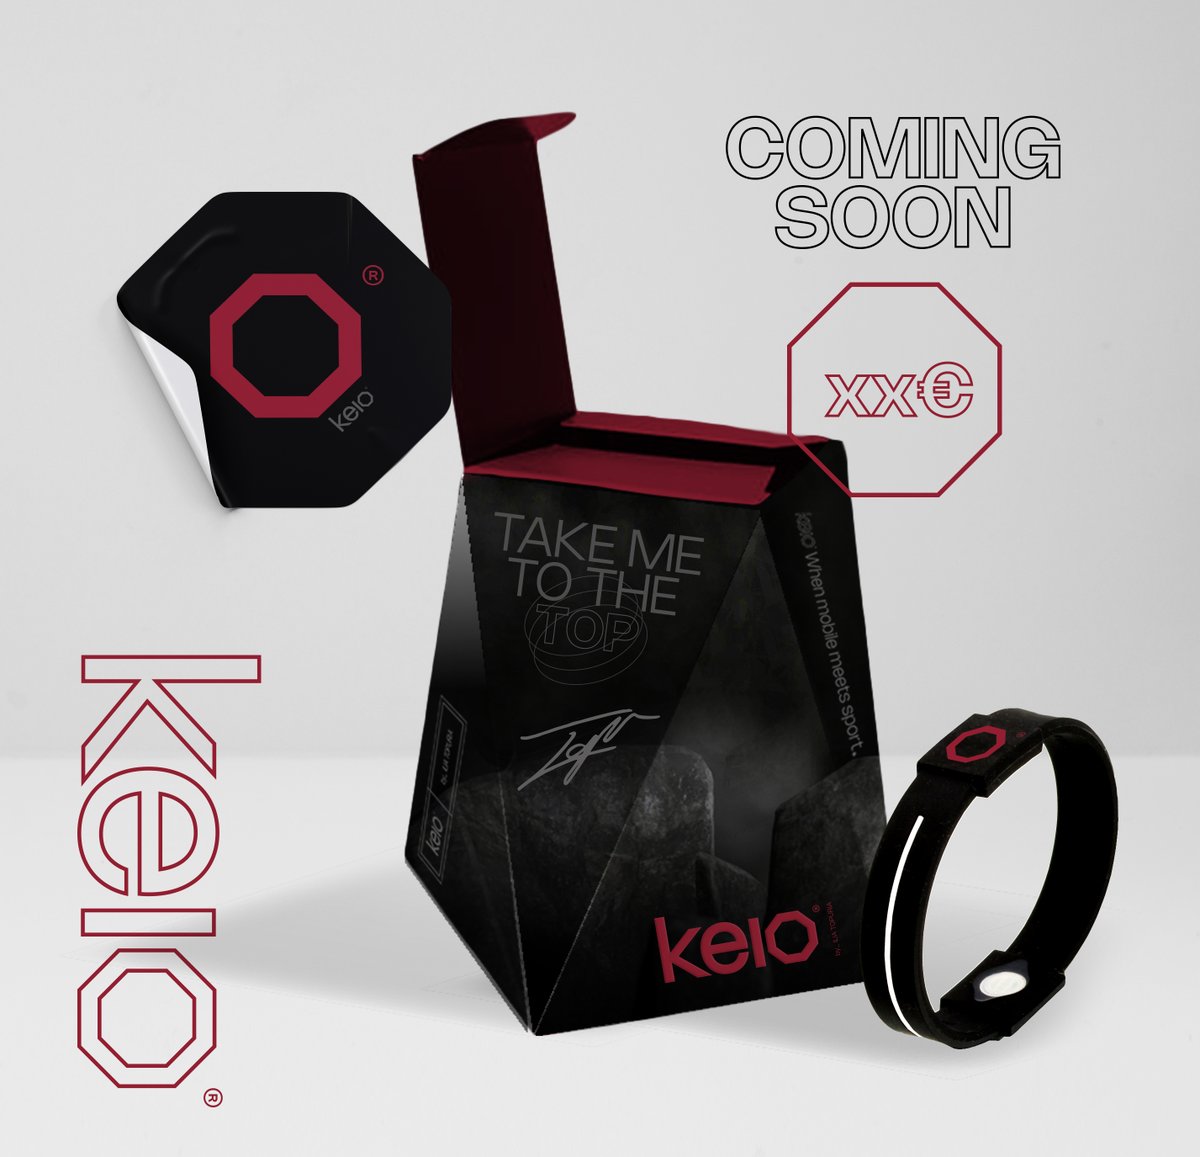 ¡Oferta exclusiva de prelanzamiento KEIO! 🌟 ¡Aprovecha este increíble pack que estará disponible por un tiempo limitado! @keio_mobile / @Topuriailia. + ℹ️ en tinyurl.com/OfertaPrelanza… #Keio · #KeioMobile · #KeioFit · #KeioConecta · #KeioByTopuria · #IliaTopuria · #Topuria